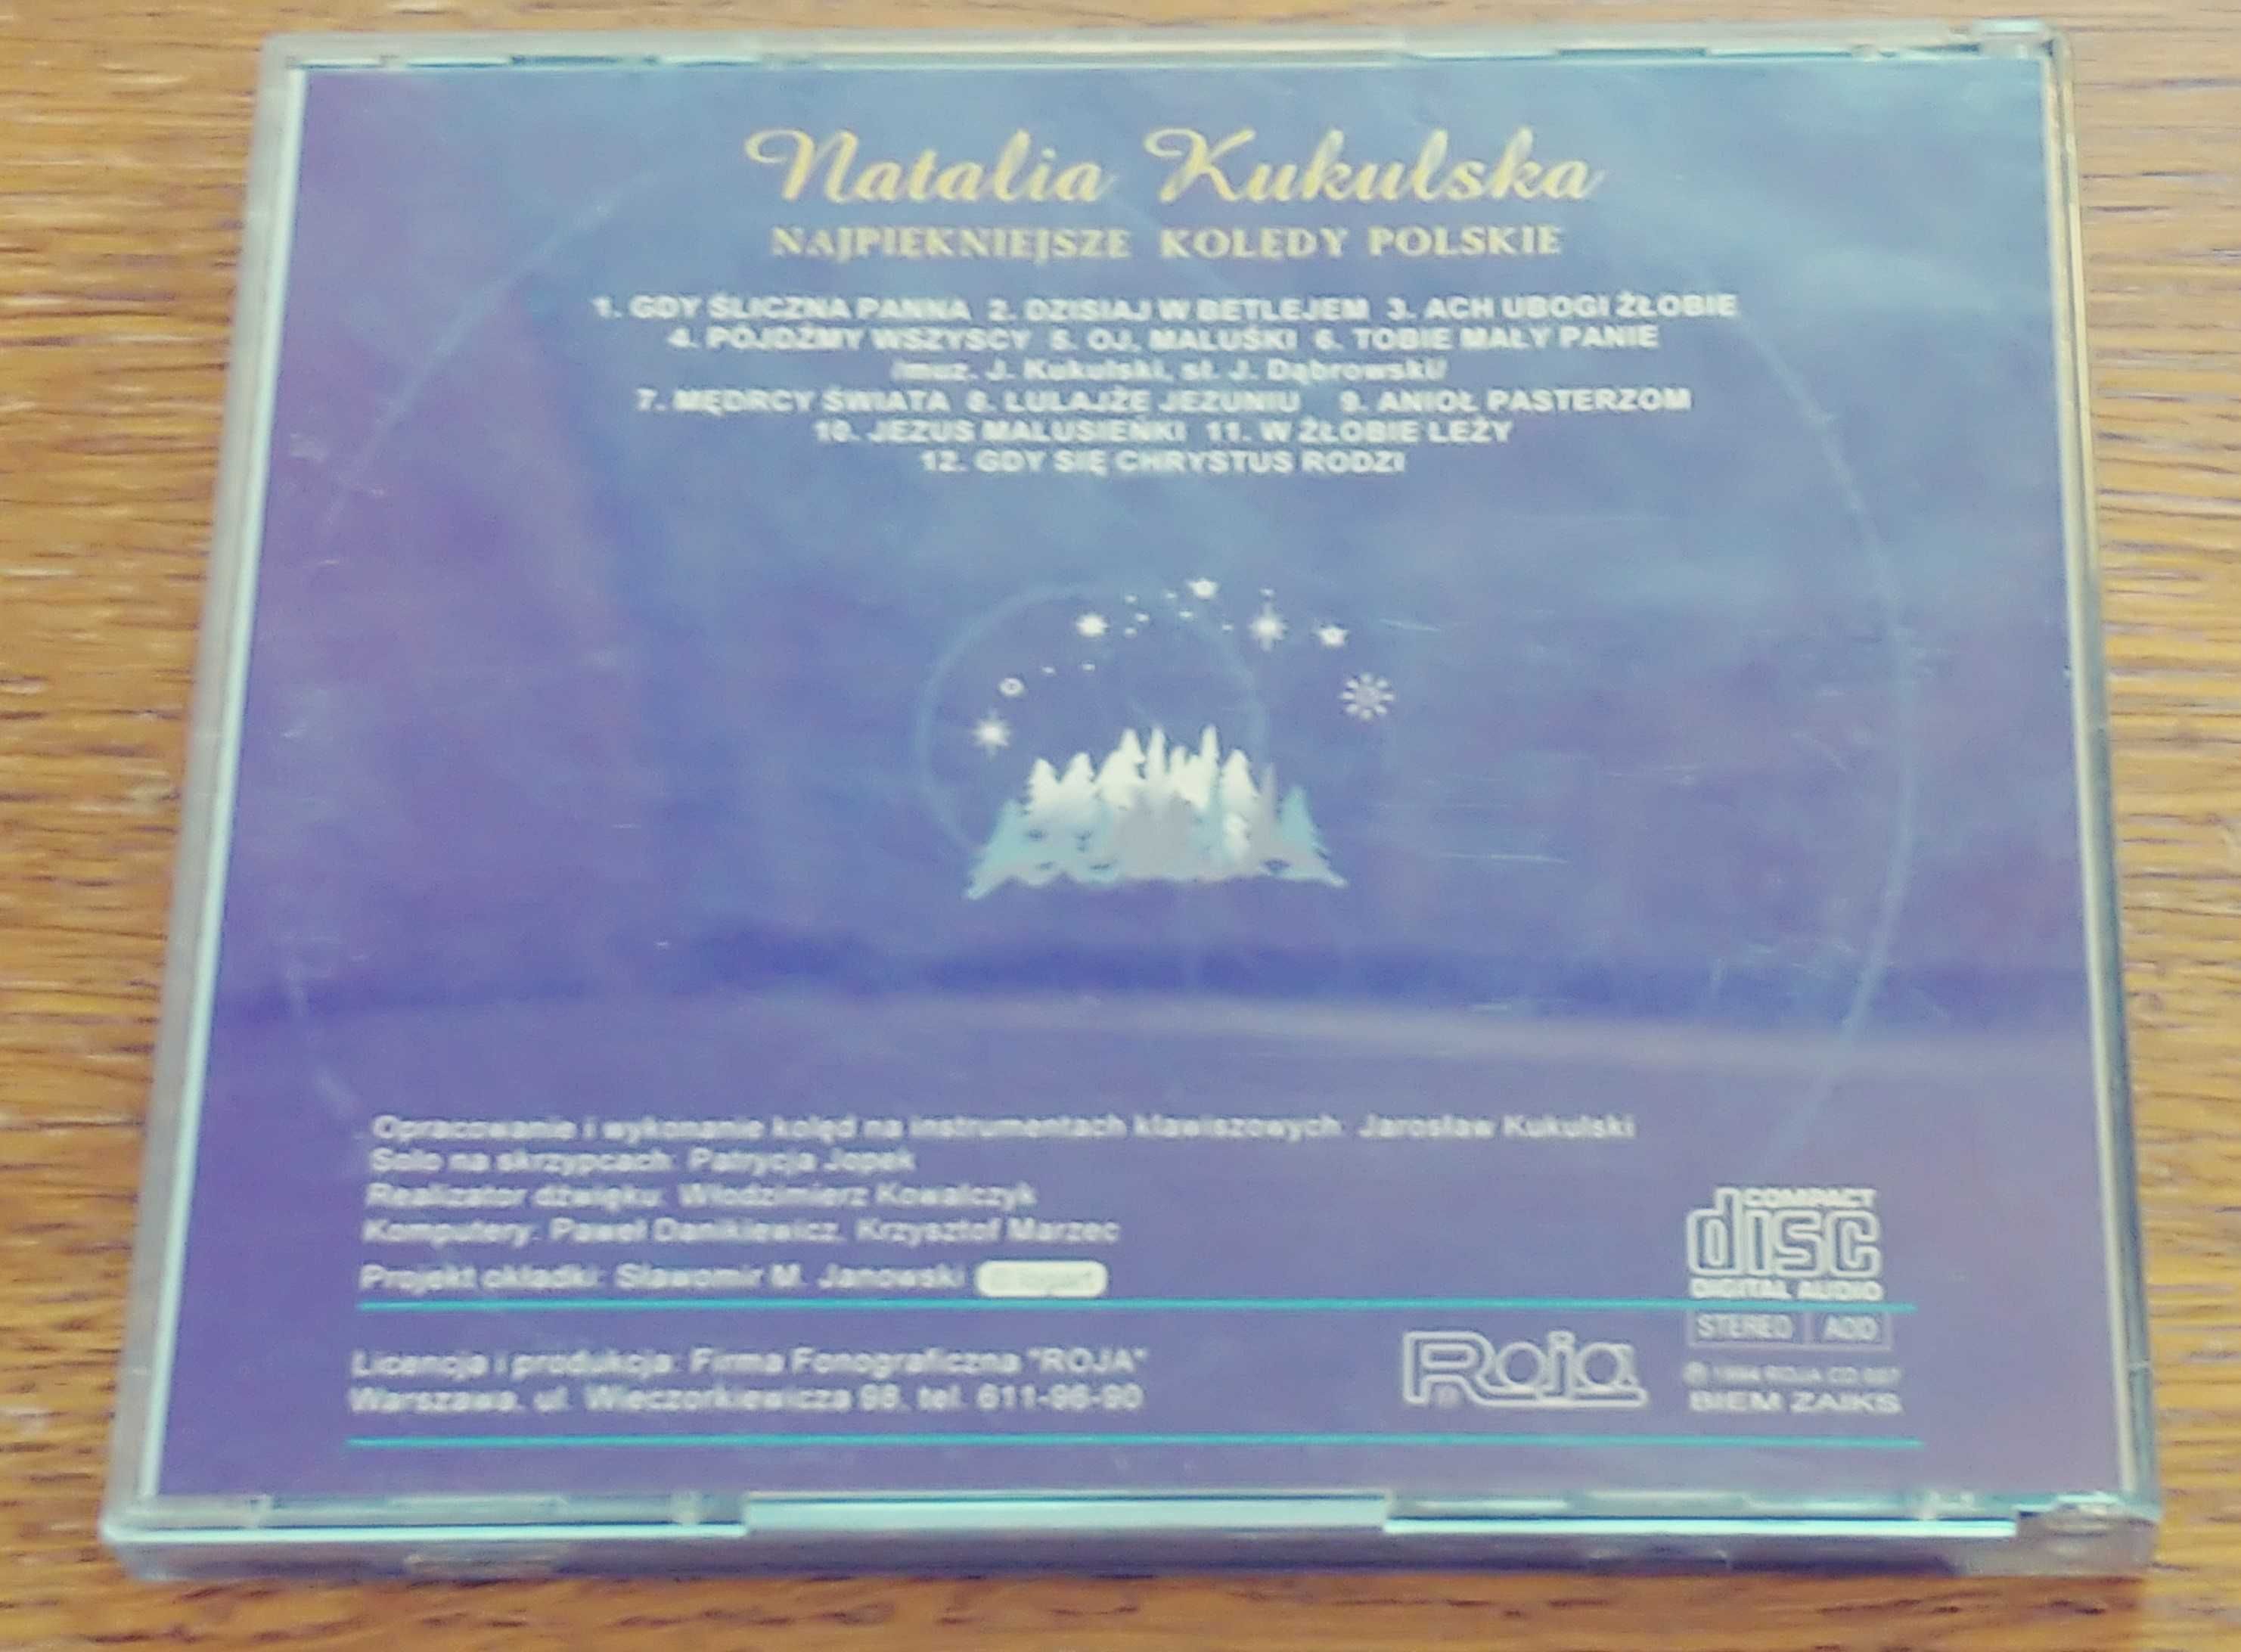 CD Najpiękniejsze kolędy polskie Natalia Kukulska